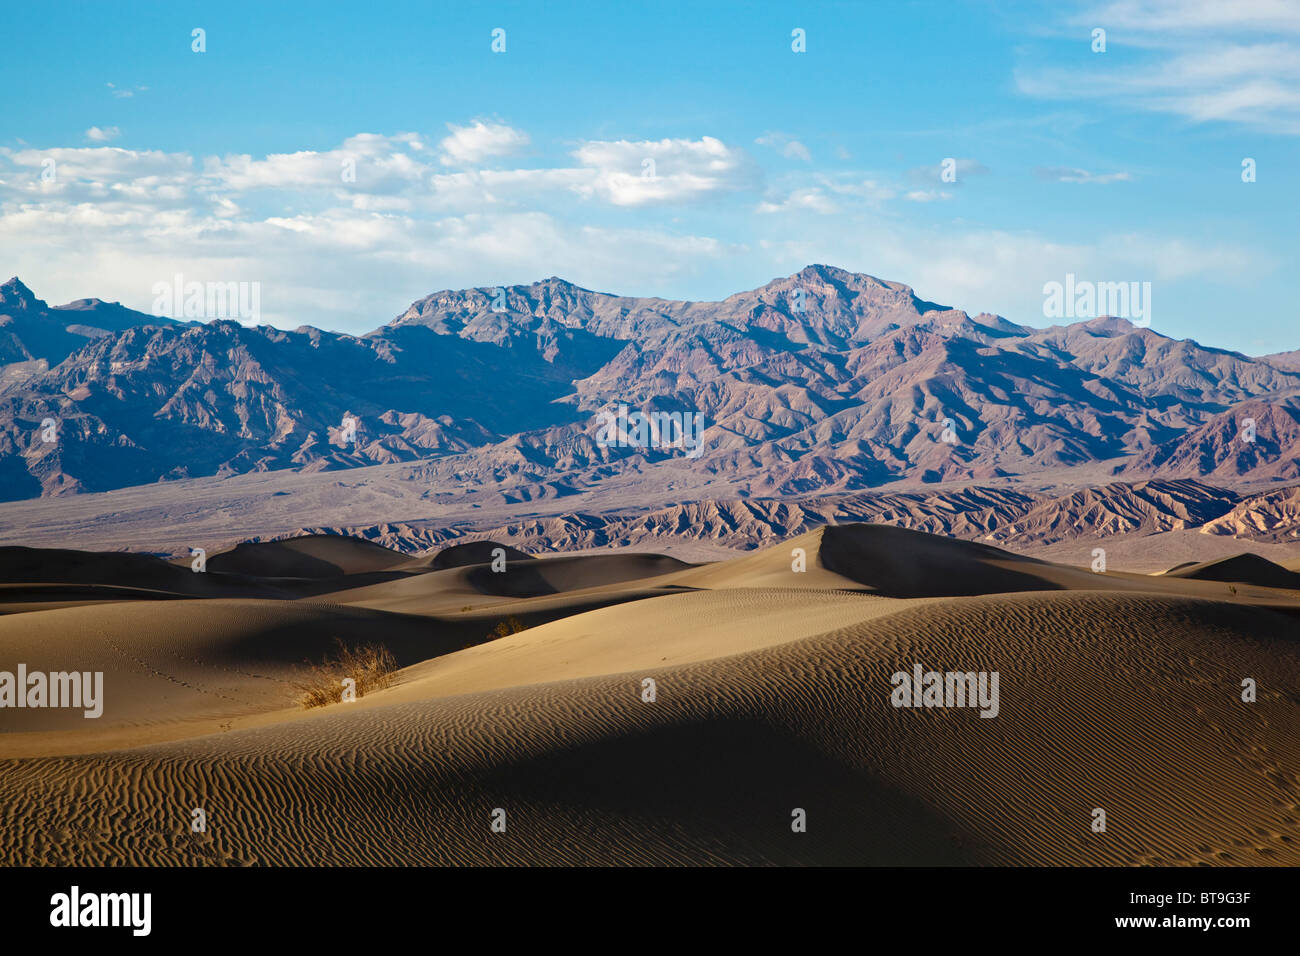 Mesquite Sand Dunes, Death Valley National Park, désert de Mojave, Californie, Nevada, USA Banque D'Images